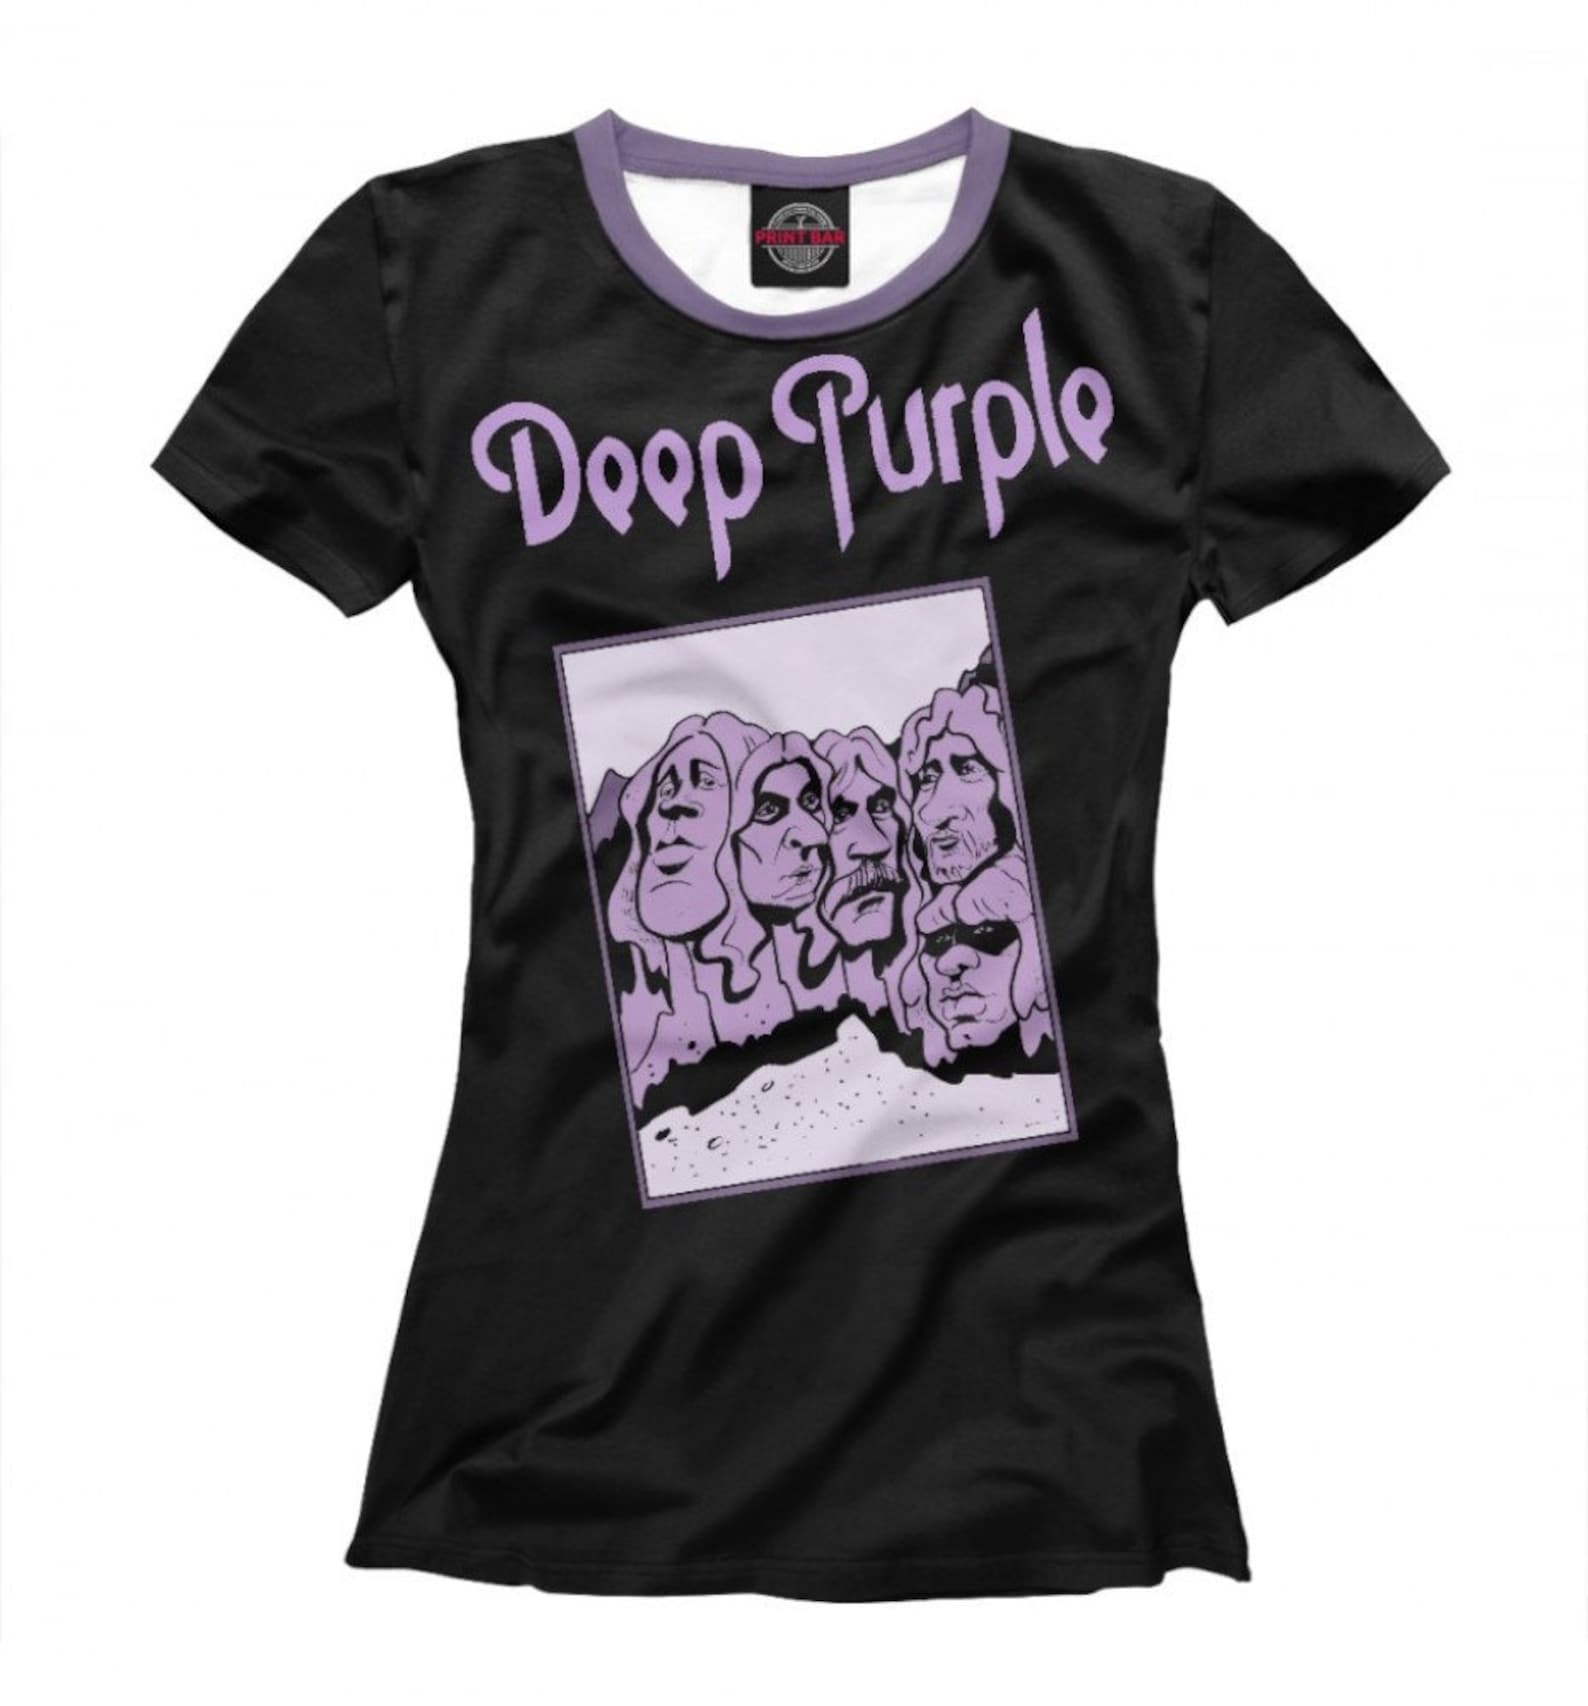 Deep Purple in Rock T-Shirt Rock Tee Men's Women's | Etsy